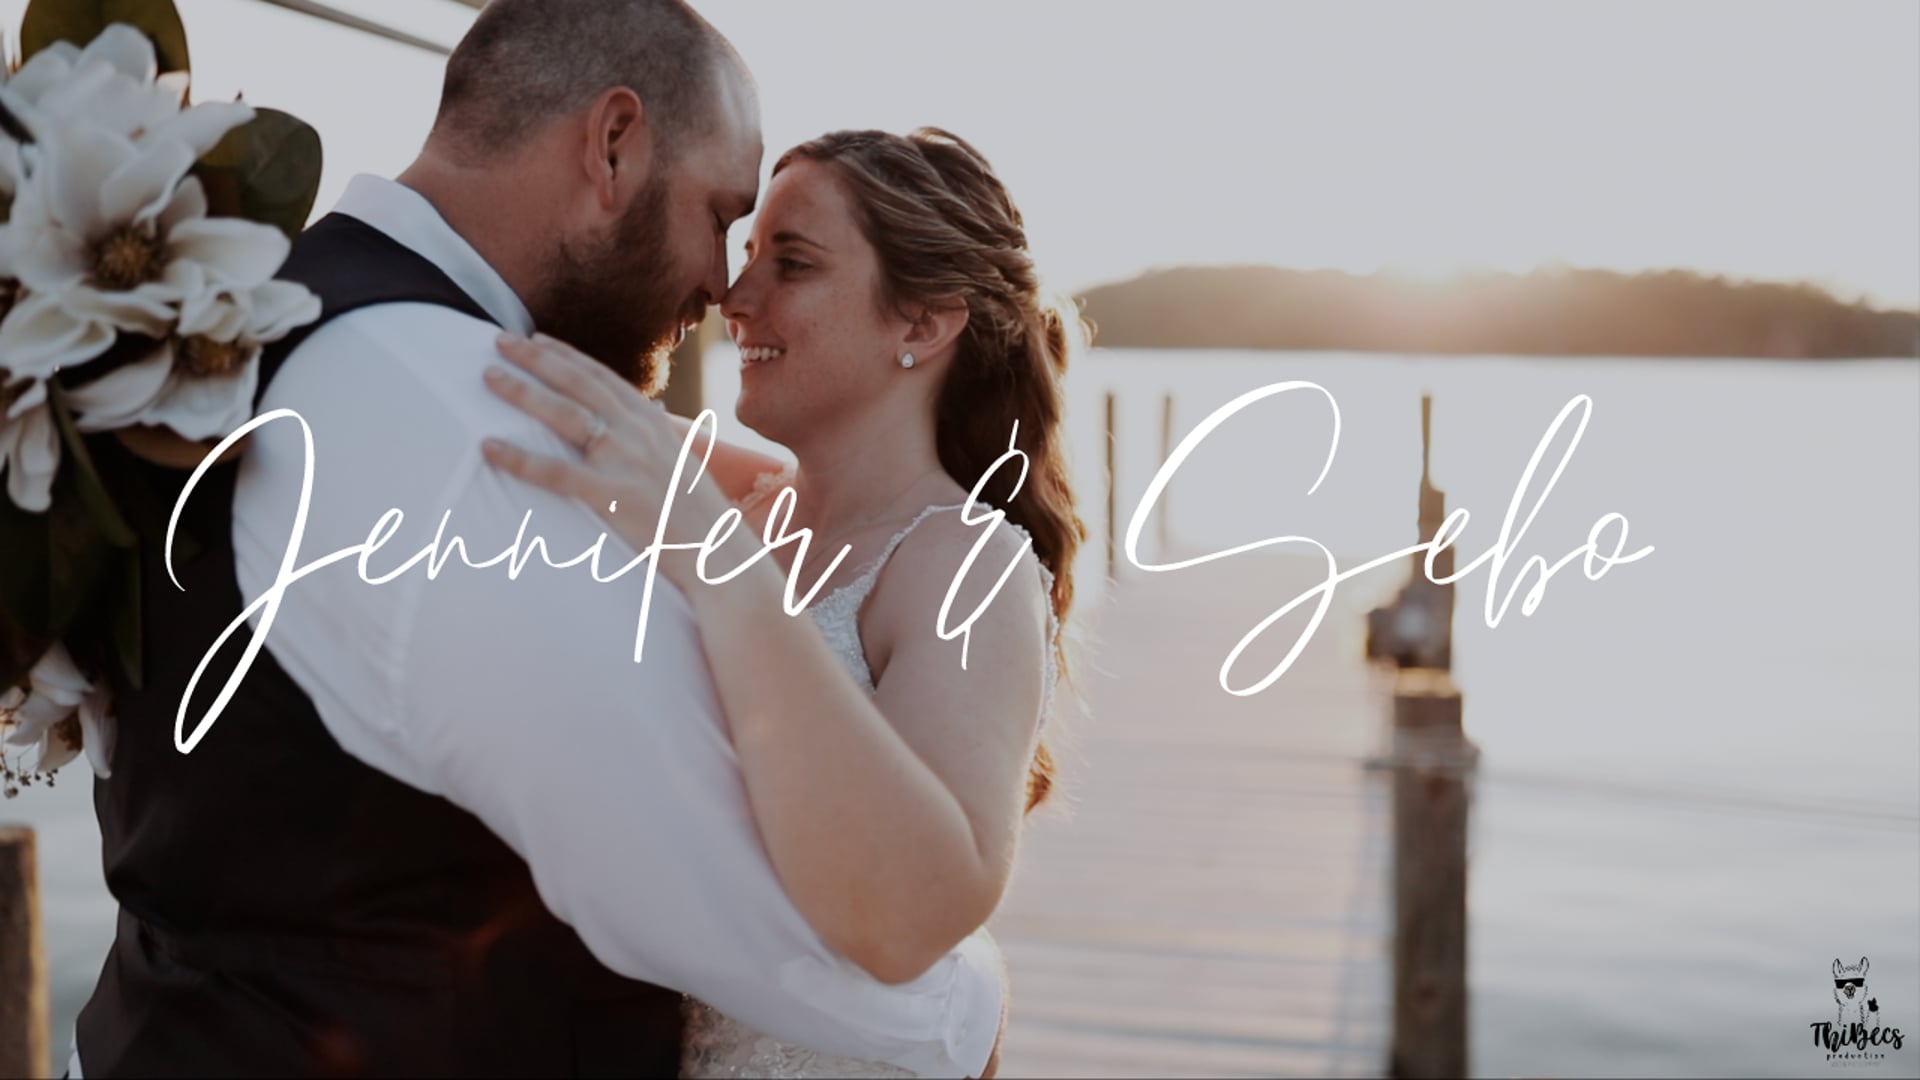 Jennifer & Sebo Wedding | Highlight Video | Reedville VA